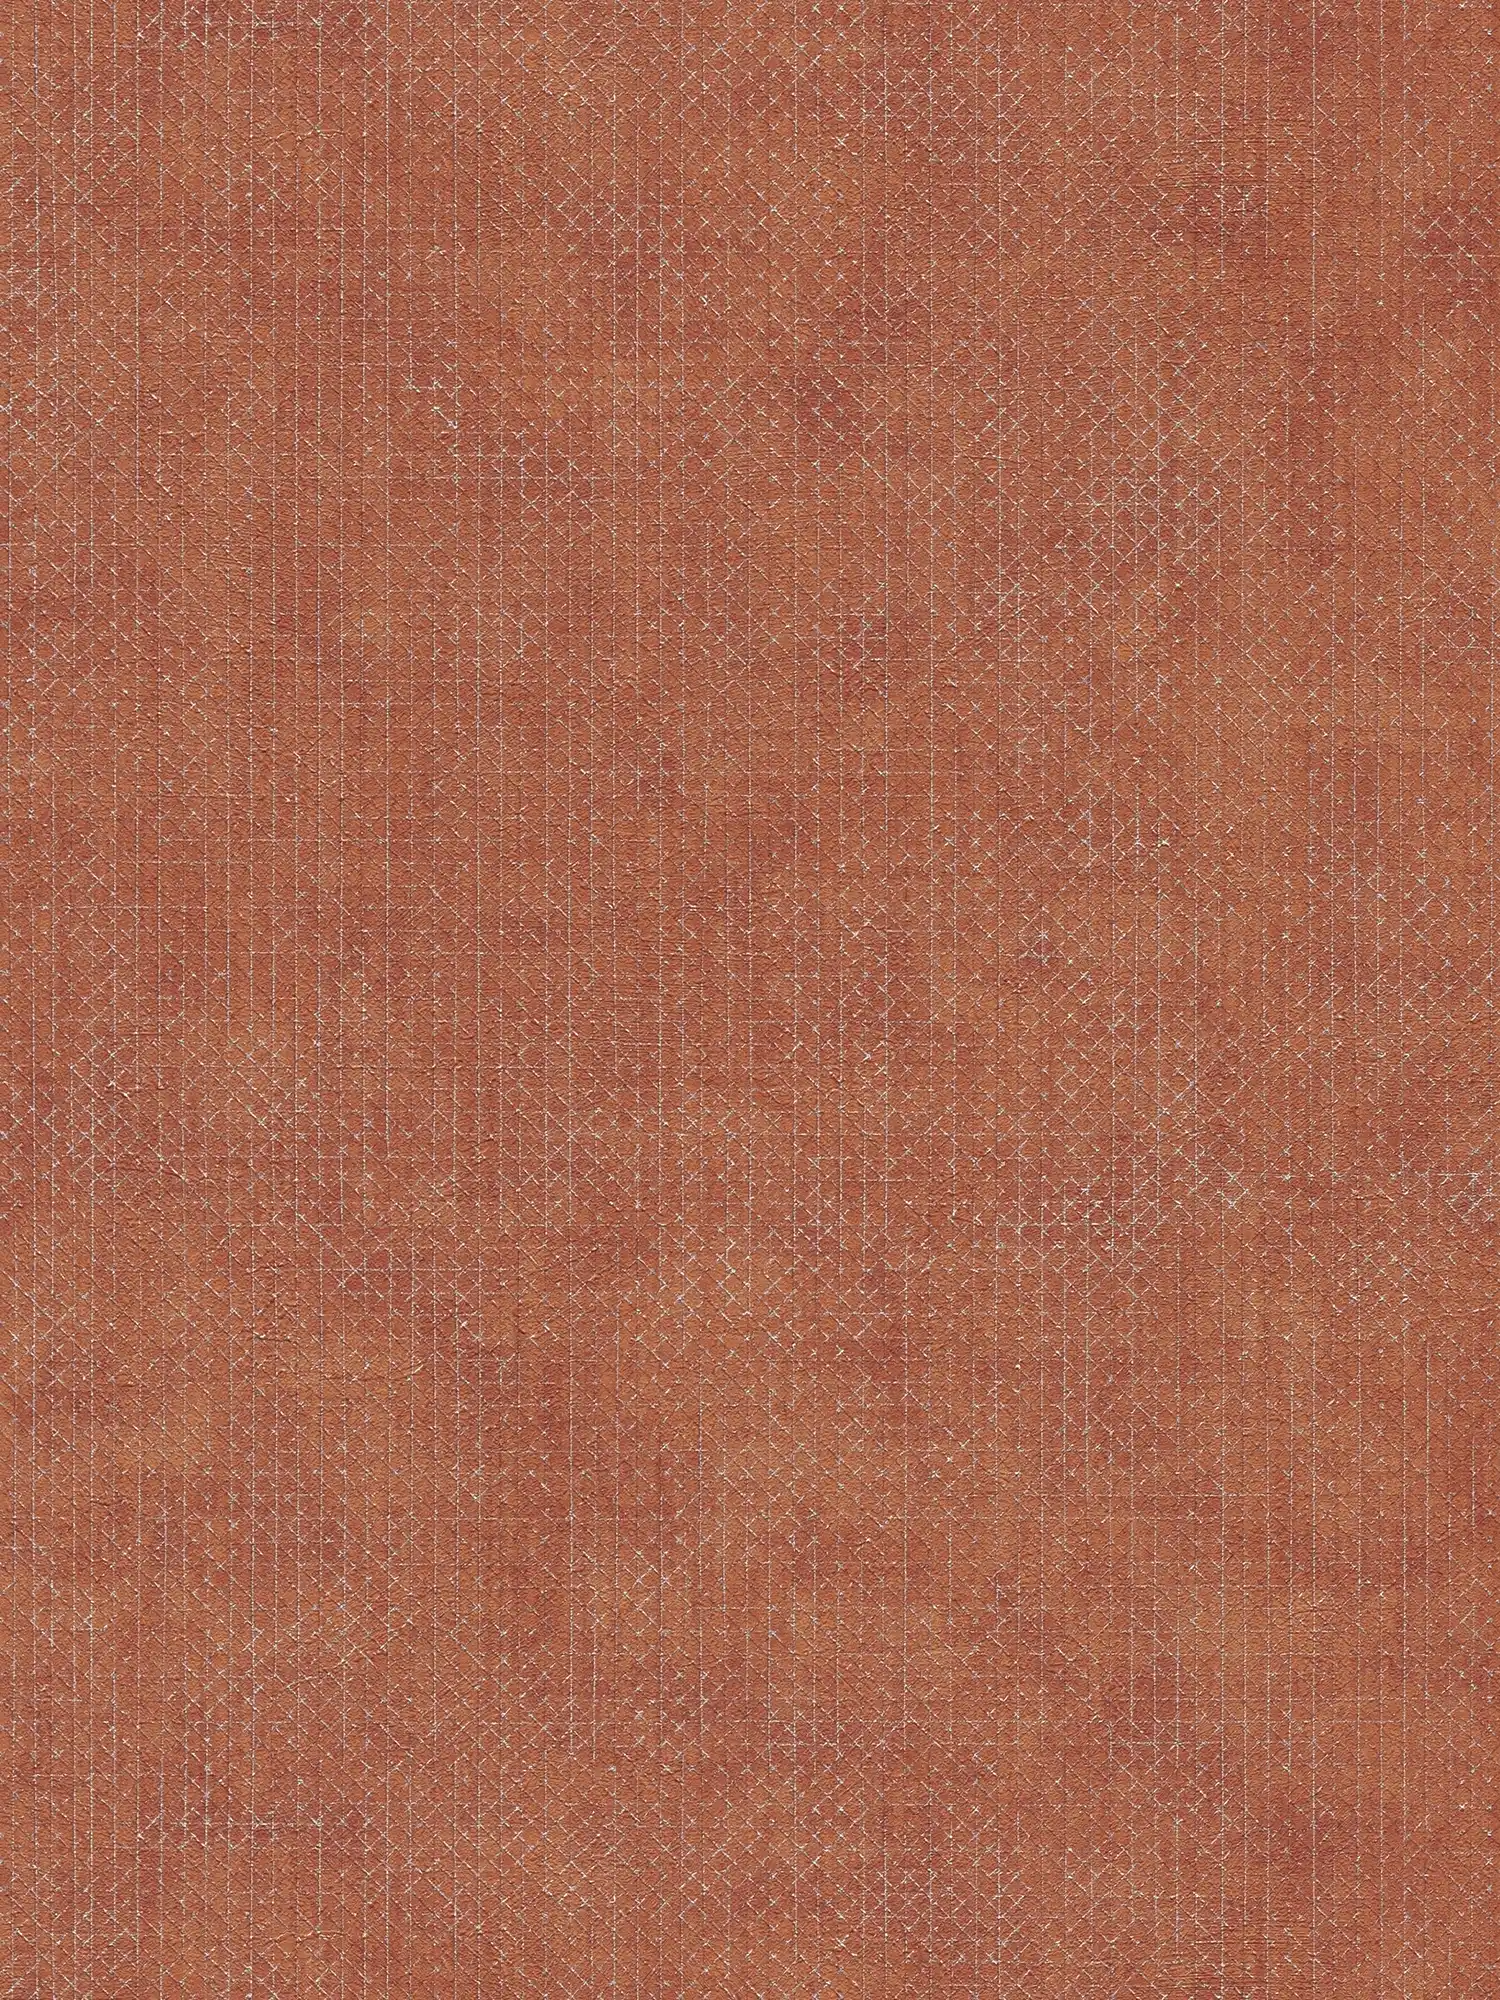 Baksteenrood behang met zilveren structuurpatroon - Oranje, Rood
